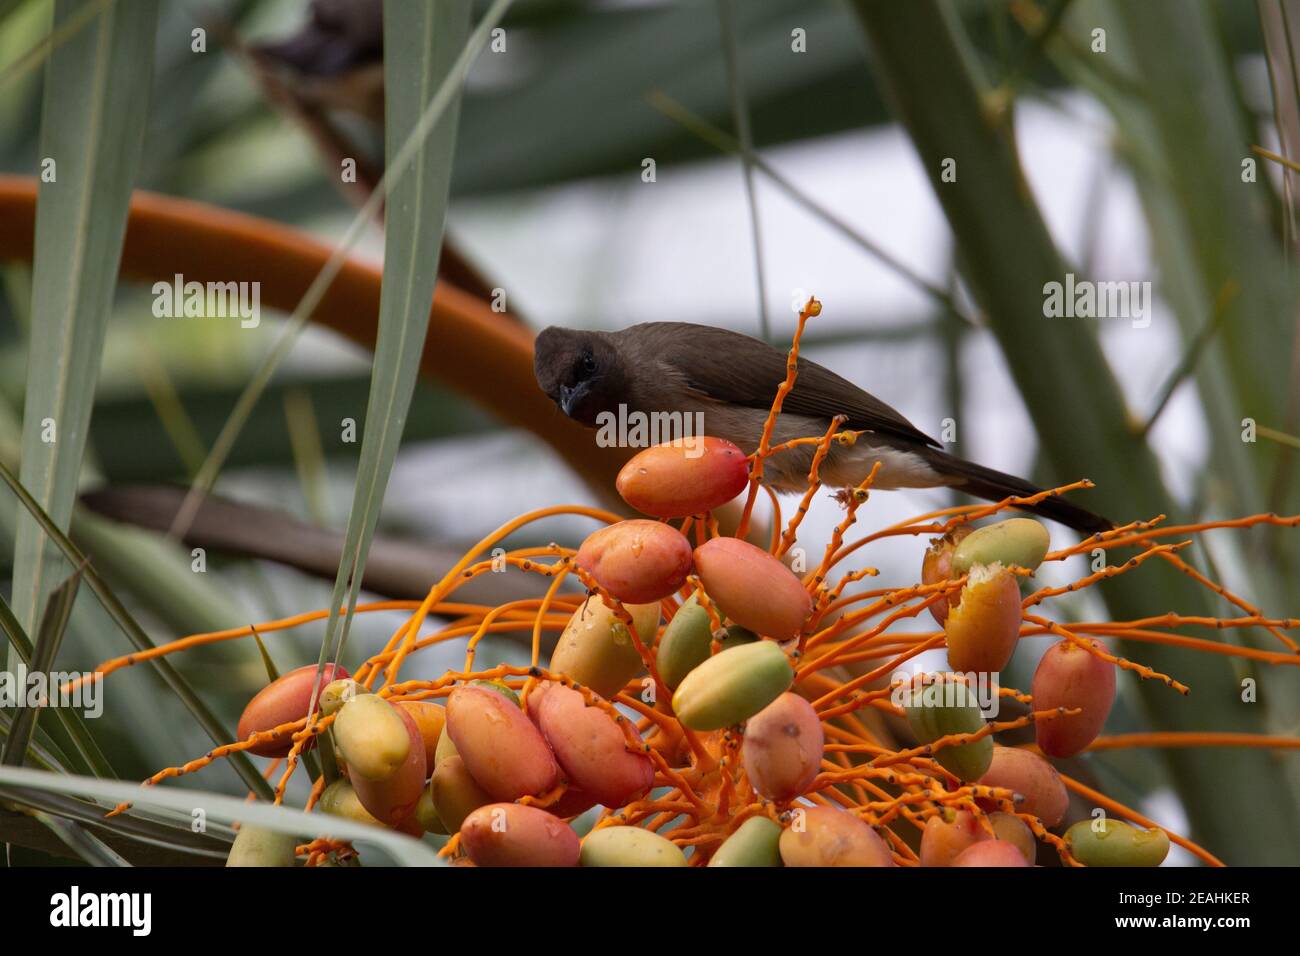 Bulbul commun (Pycnonotus barbatus) un bulbul commun dans un palmier dattier orange et rouge arbre avec feuilles de palmier en arrière-plan Banque D'Images